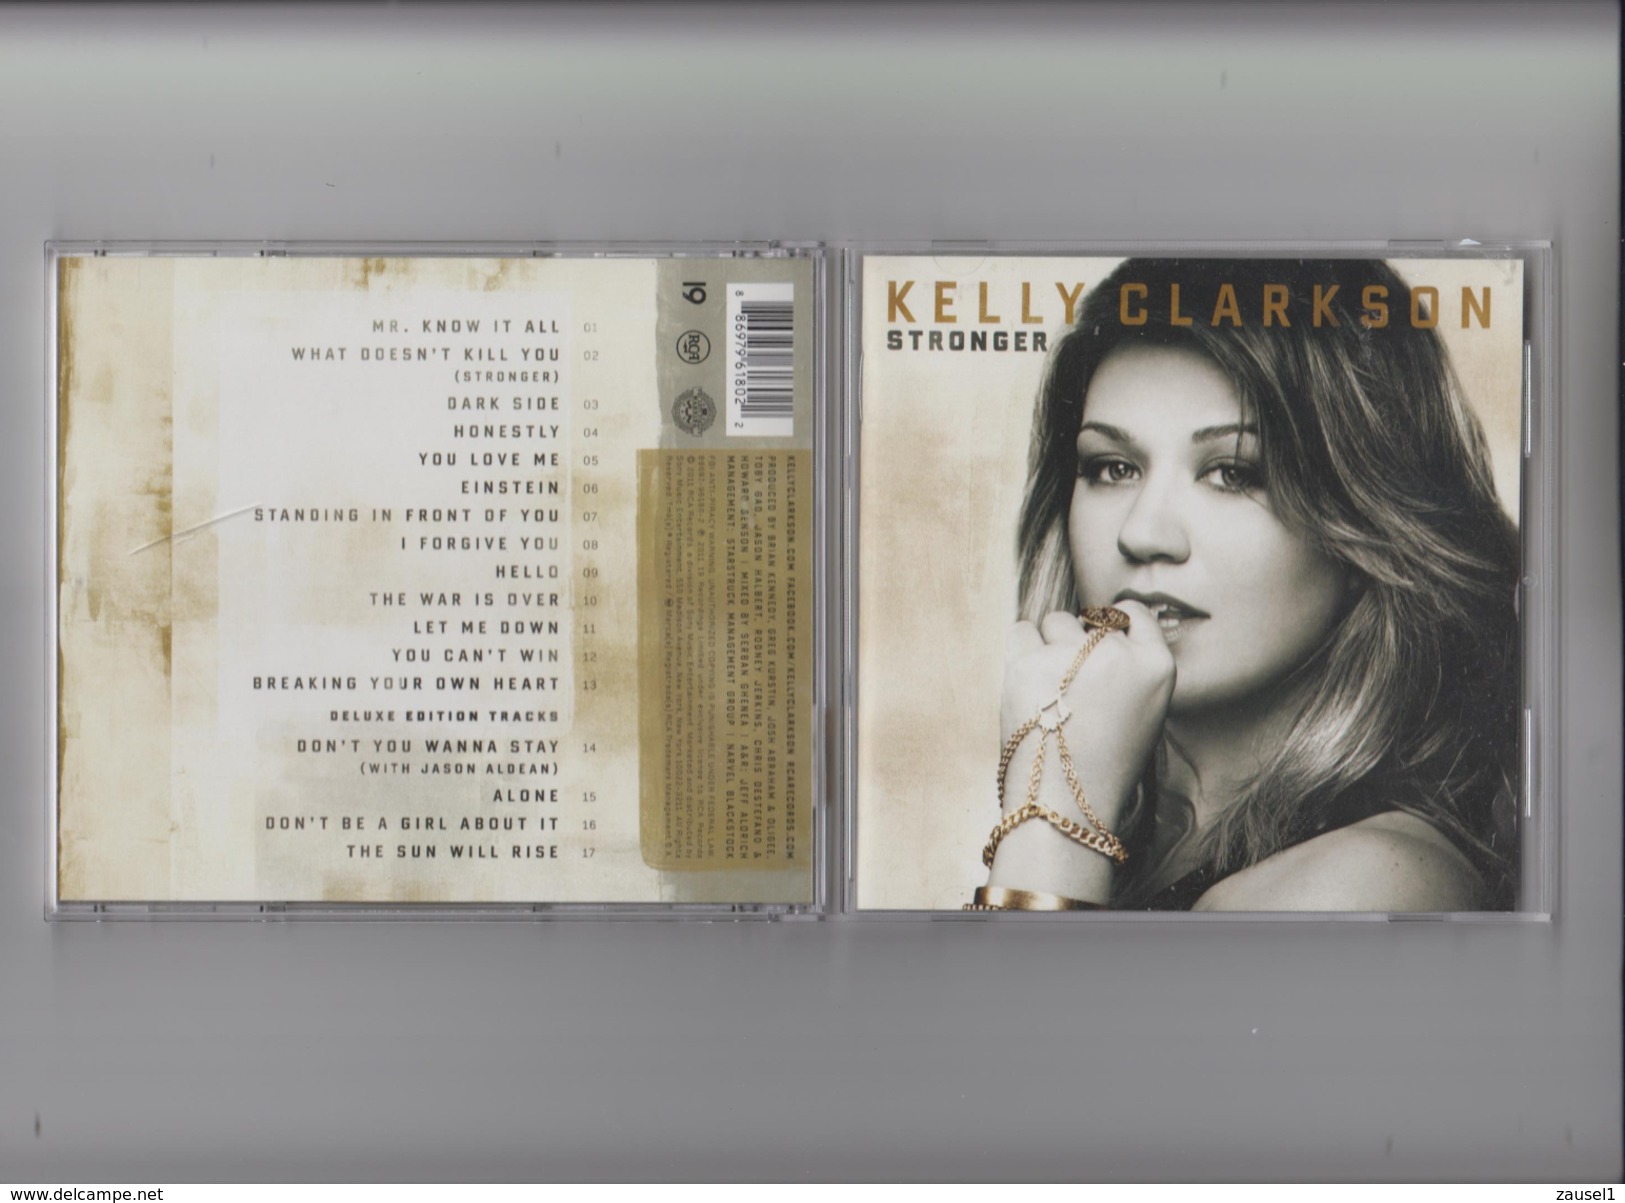 Kelly Clarkson - Stronger - De Luxe Edition, 4 Extra Songs - Original CD - Country & Folk